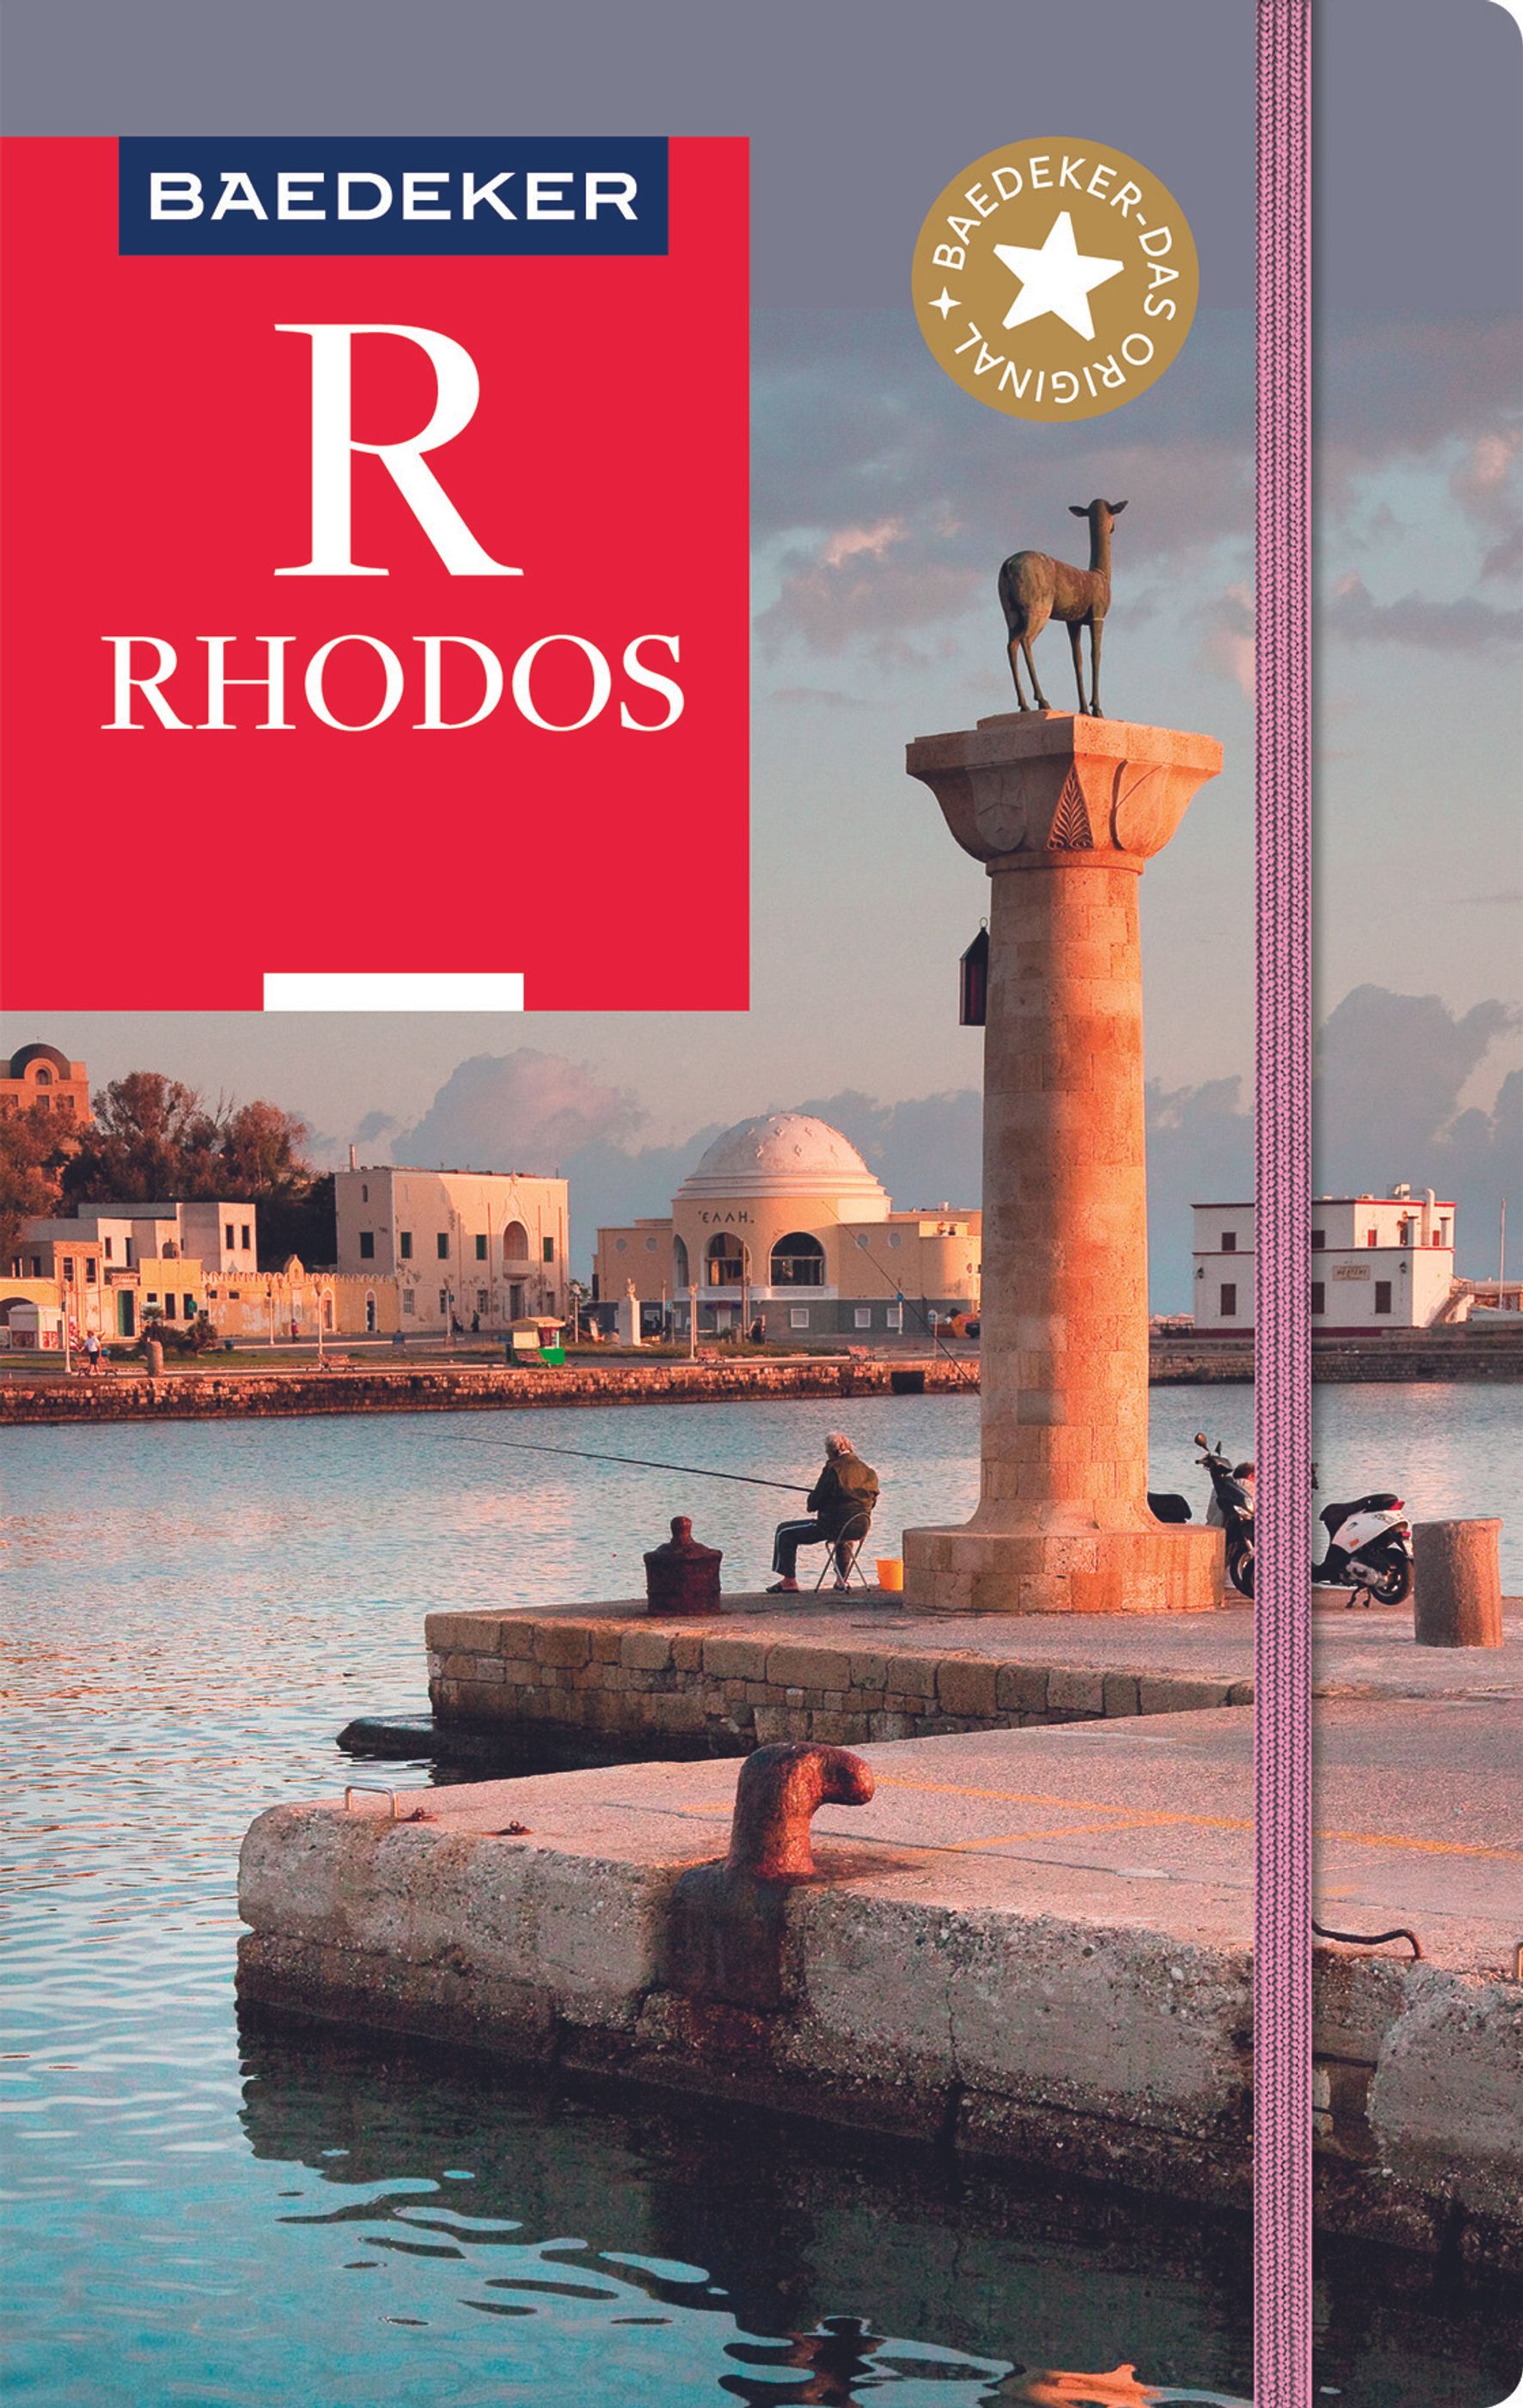 Baedeker Rhodos (eBook)